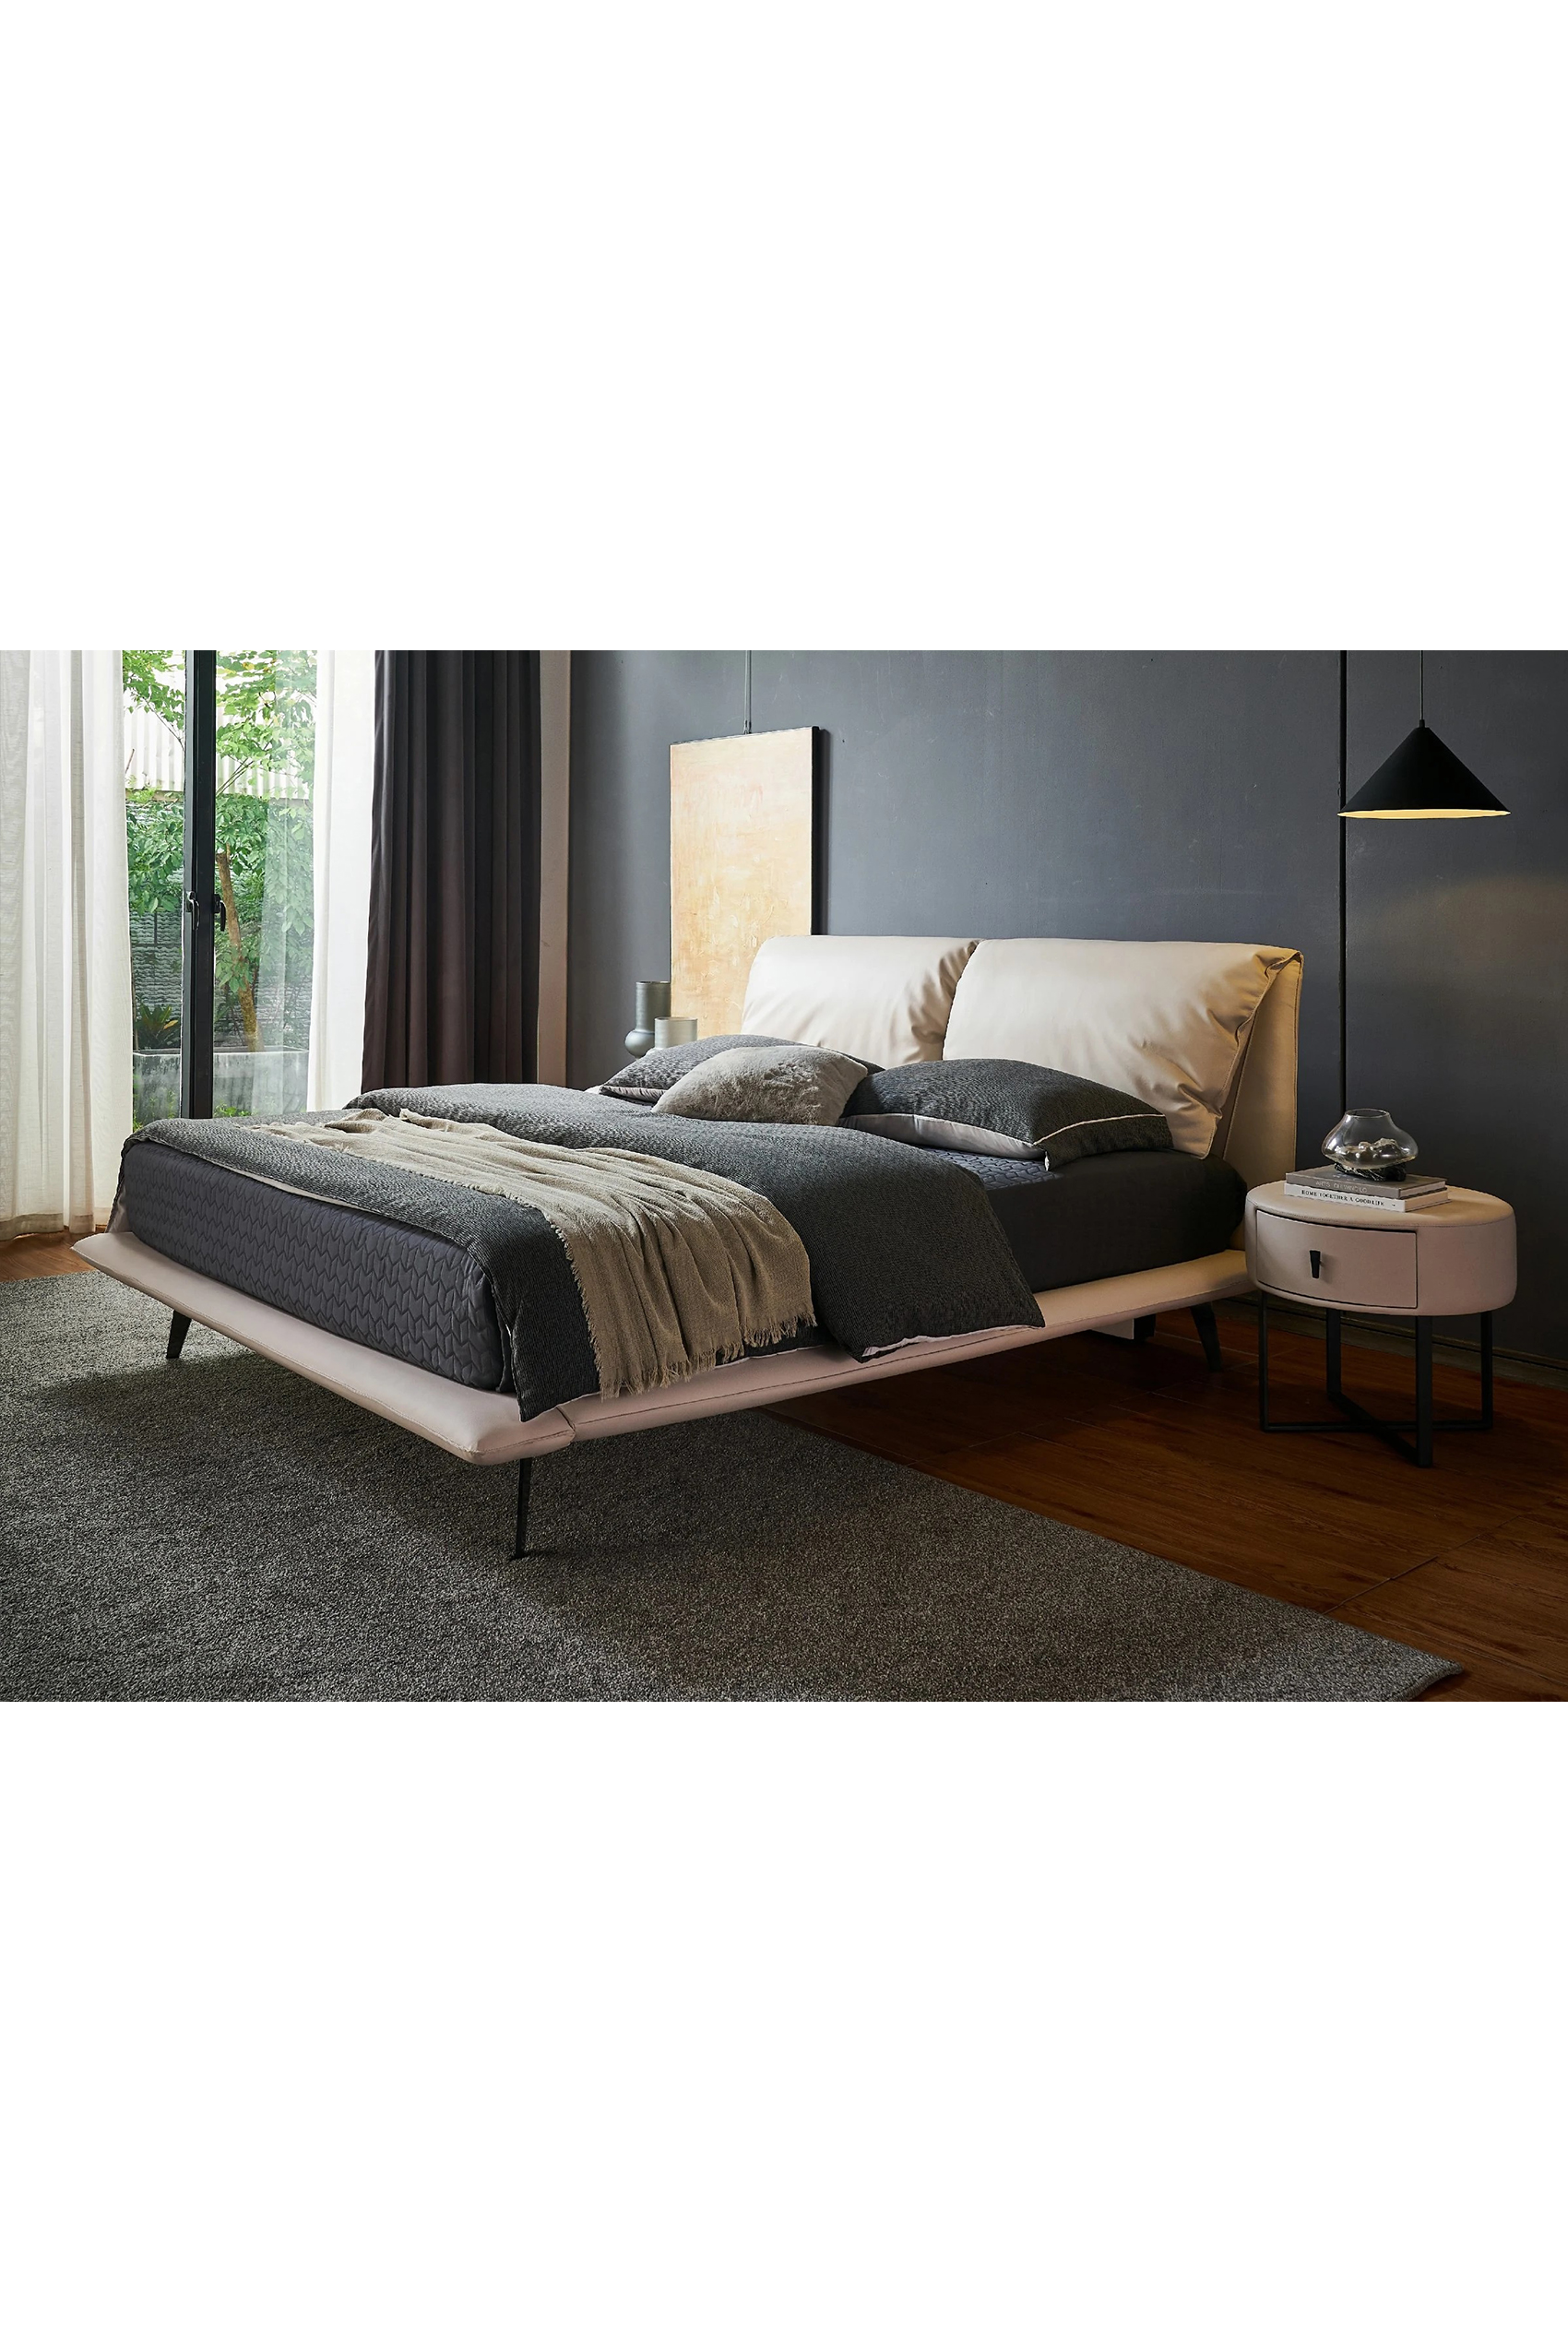 Rapolla Designer Bed Frame